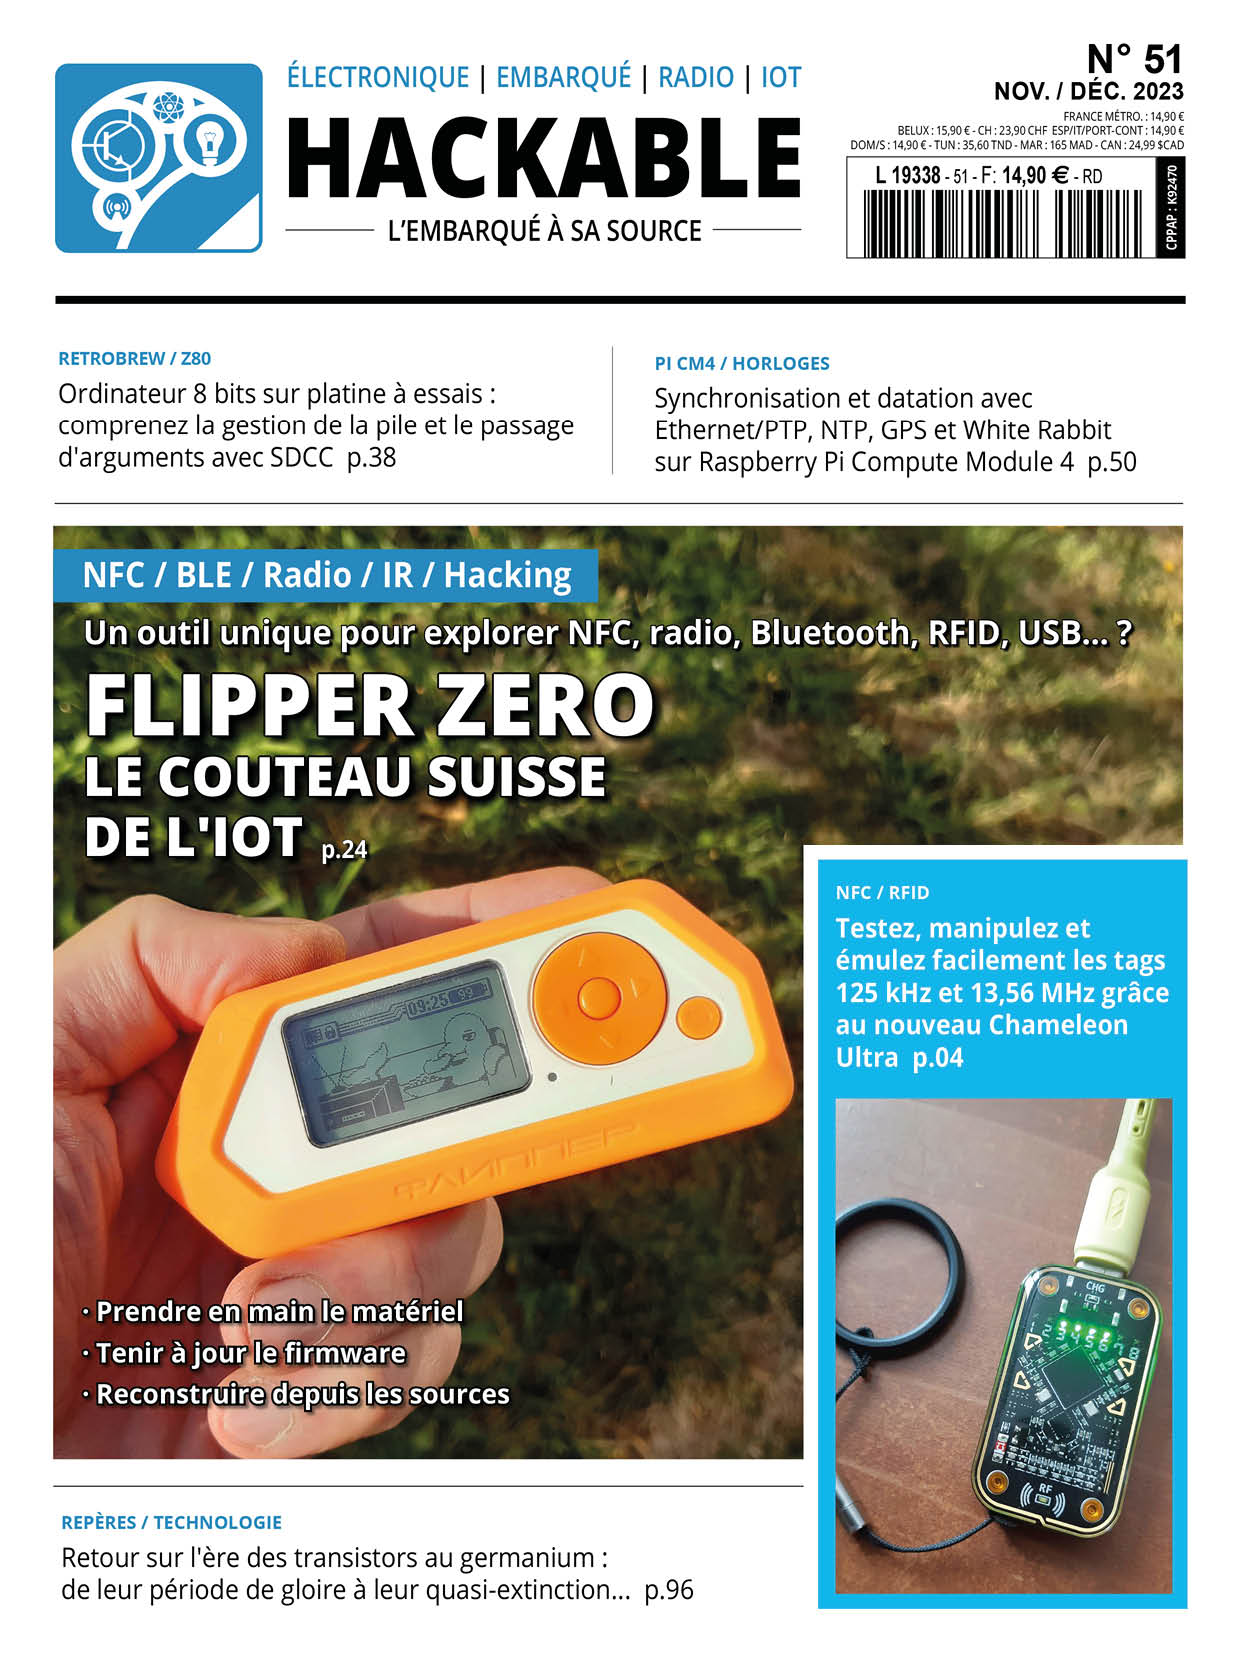 Flipper Zero, le couteau suisse de l'IoT